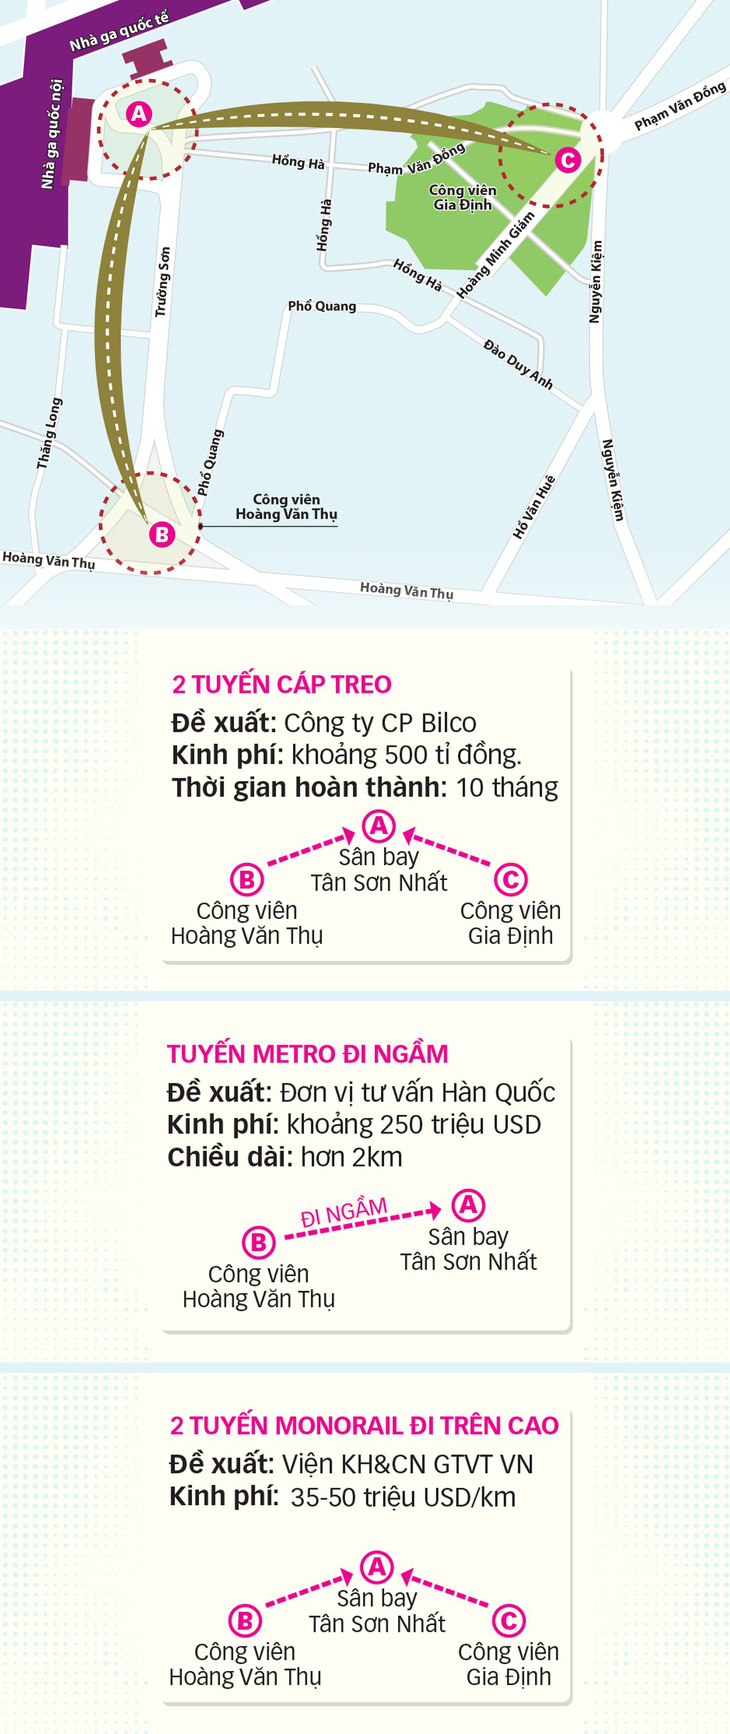 6 dự án phá thế độc đạo vào sân bay Tân Sơn Nhất - Ảnh 5.